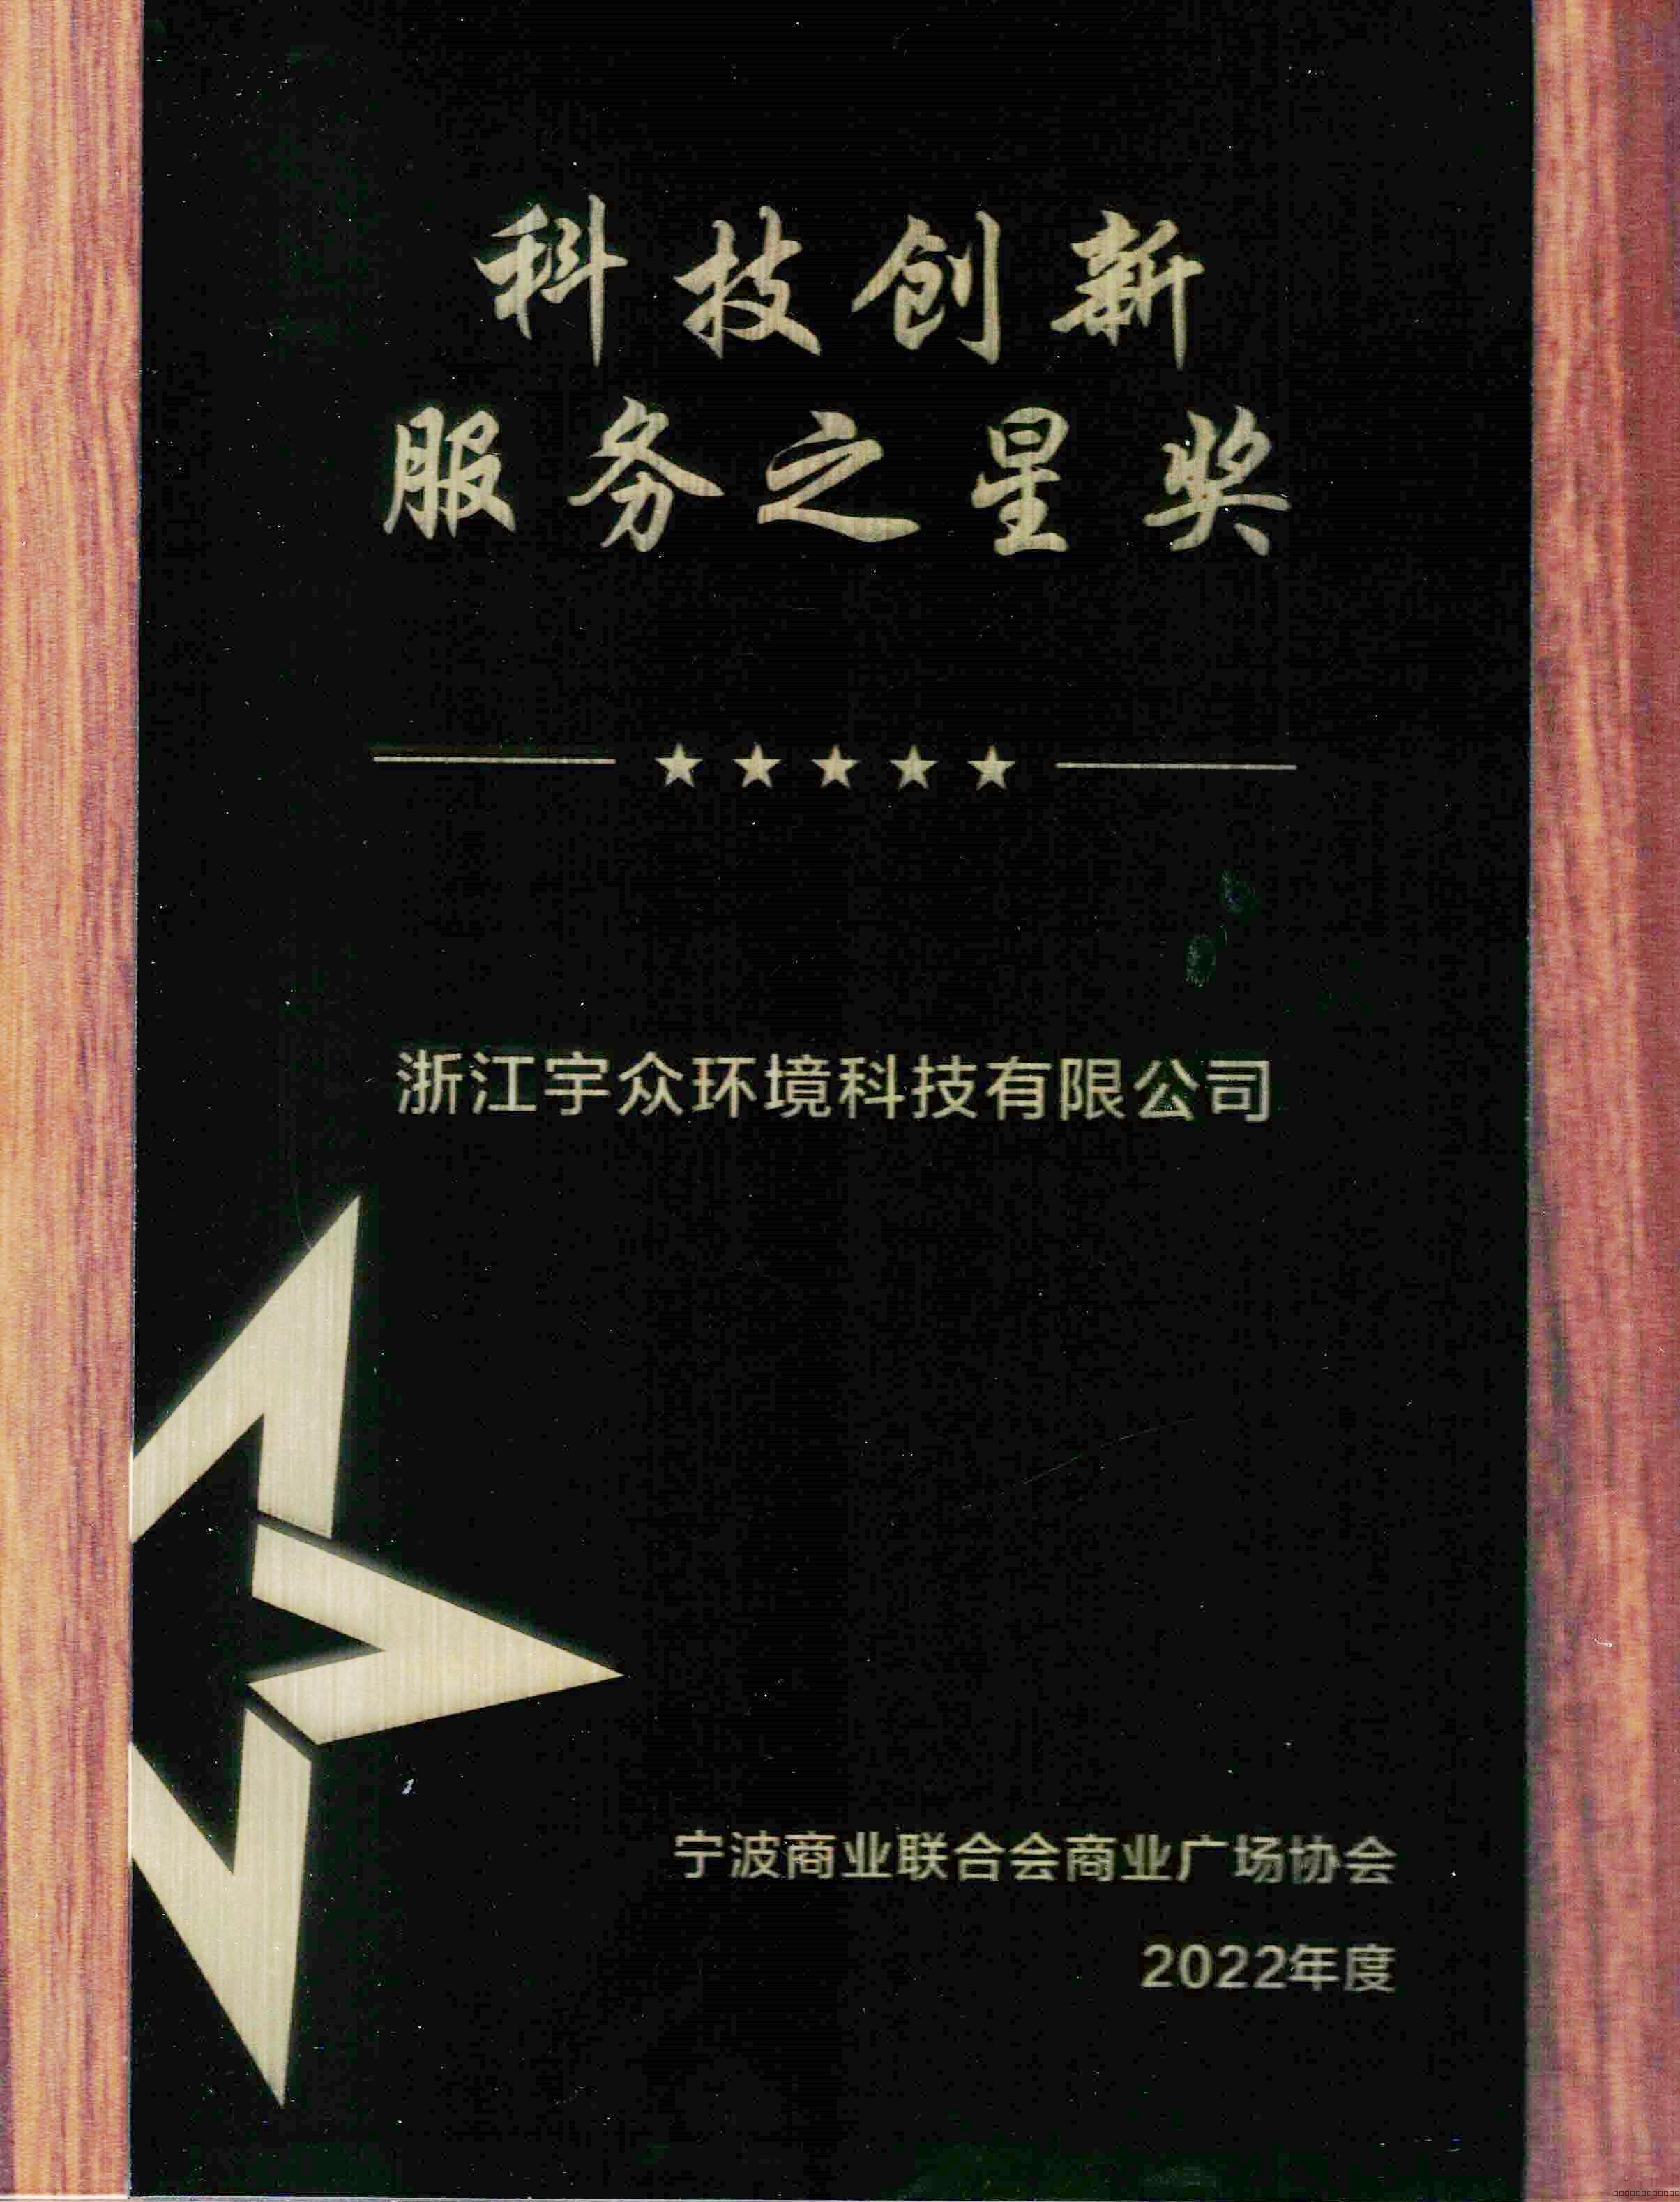 恭喜浙江宇众荣获“科技创新服务之星”奖